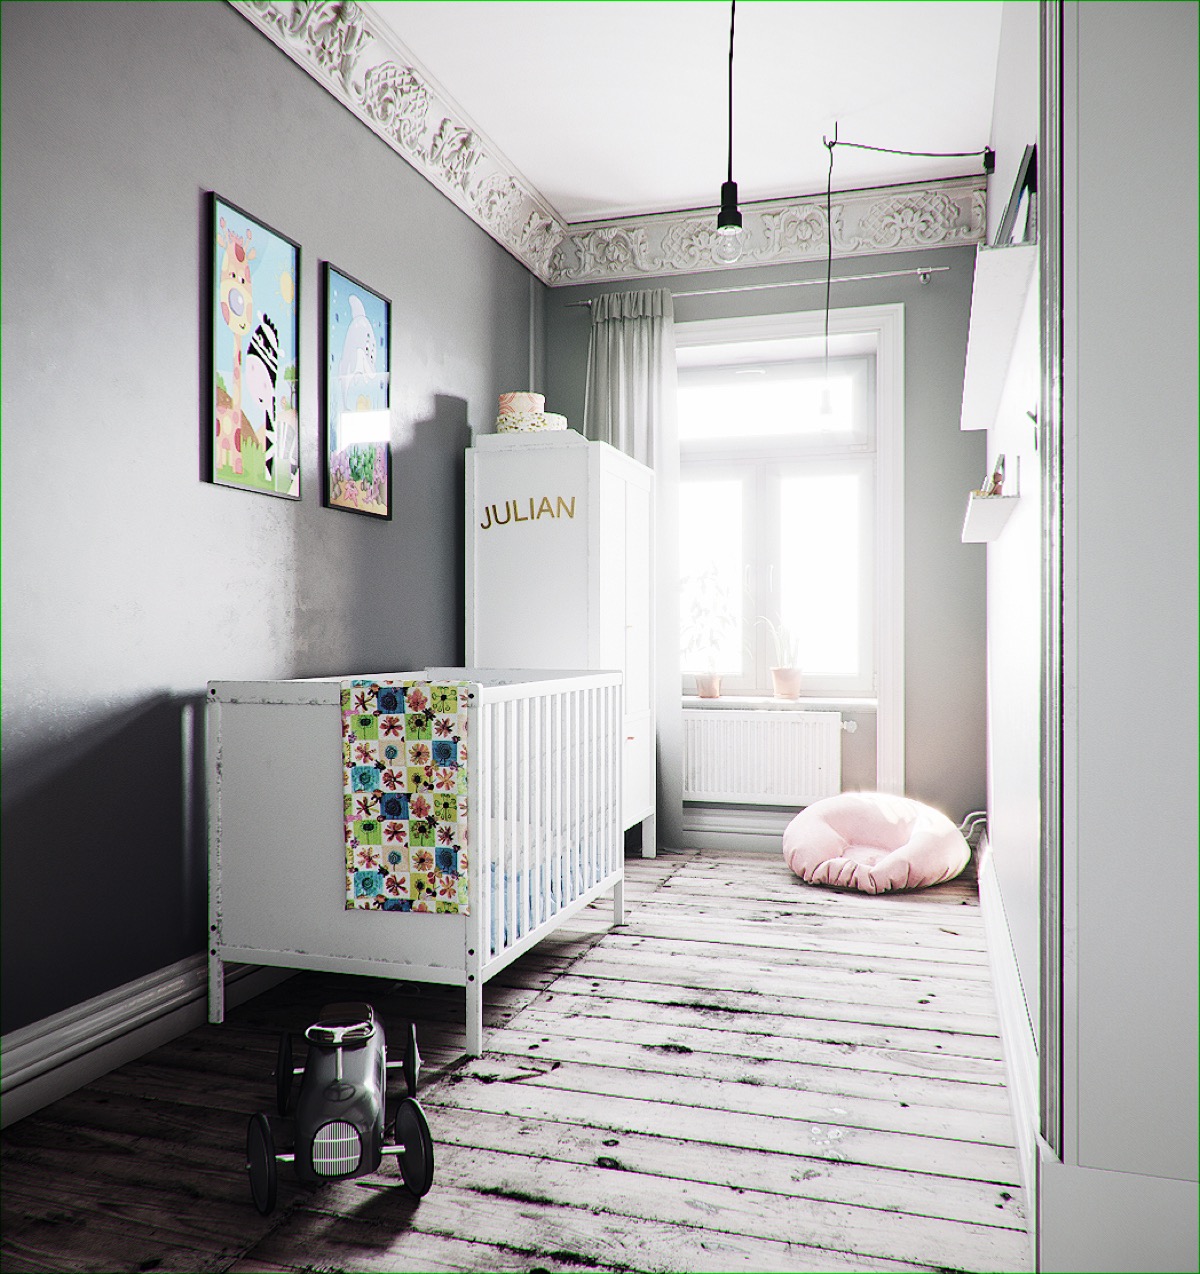 grey-nursery-decor-600x637.jpg